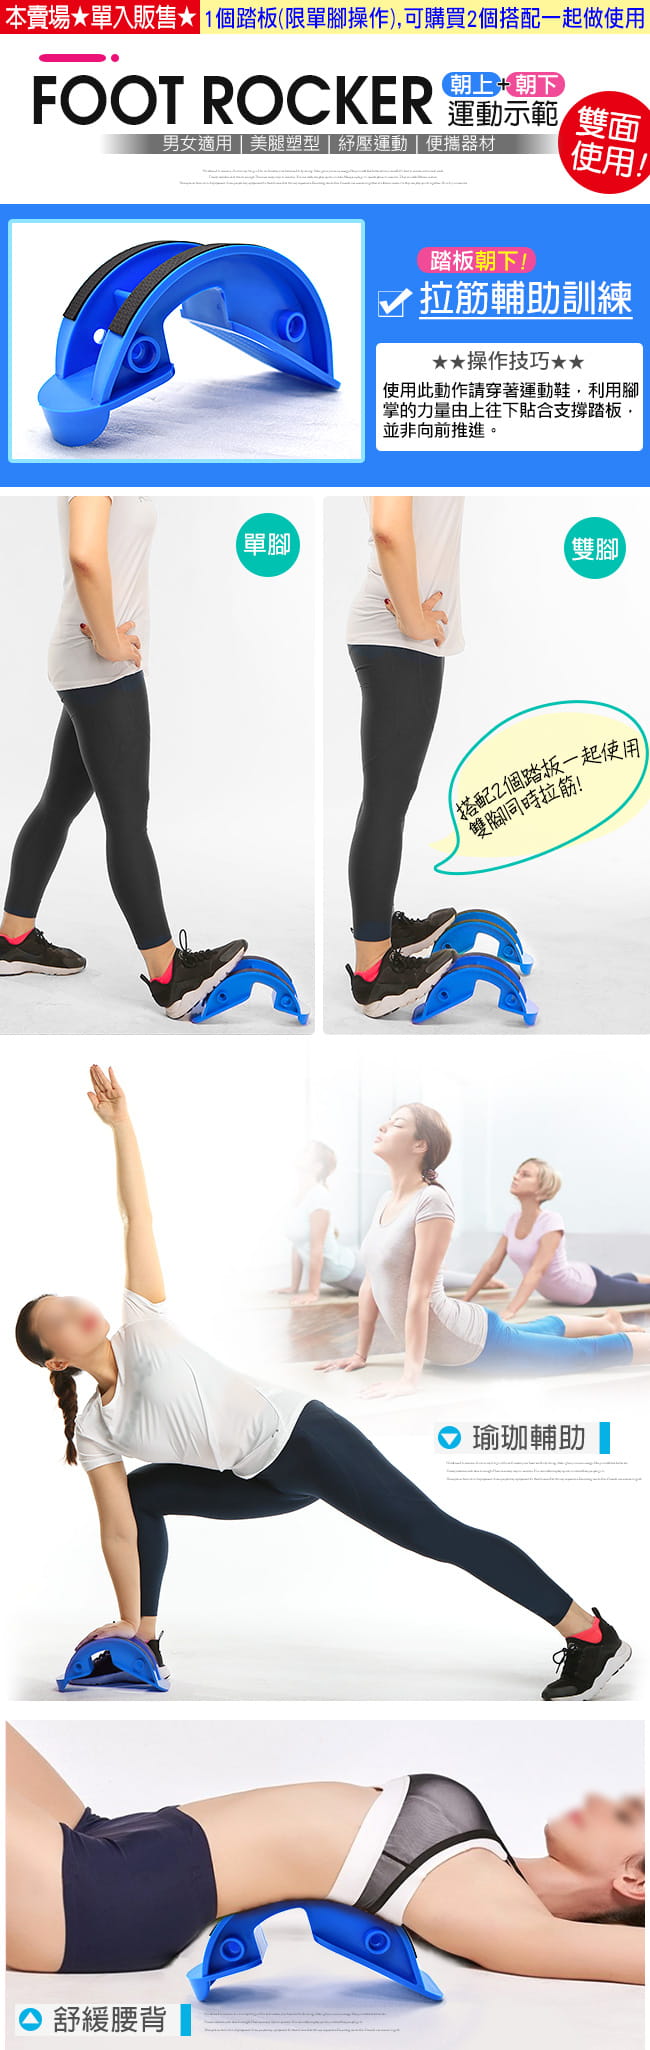 瑜珈輔助拉筋鞋神器 (拉筋板小腿舒壓拉筋器材.易筋板足筋板) 5